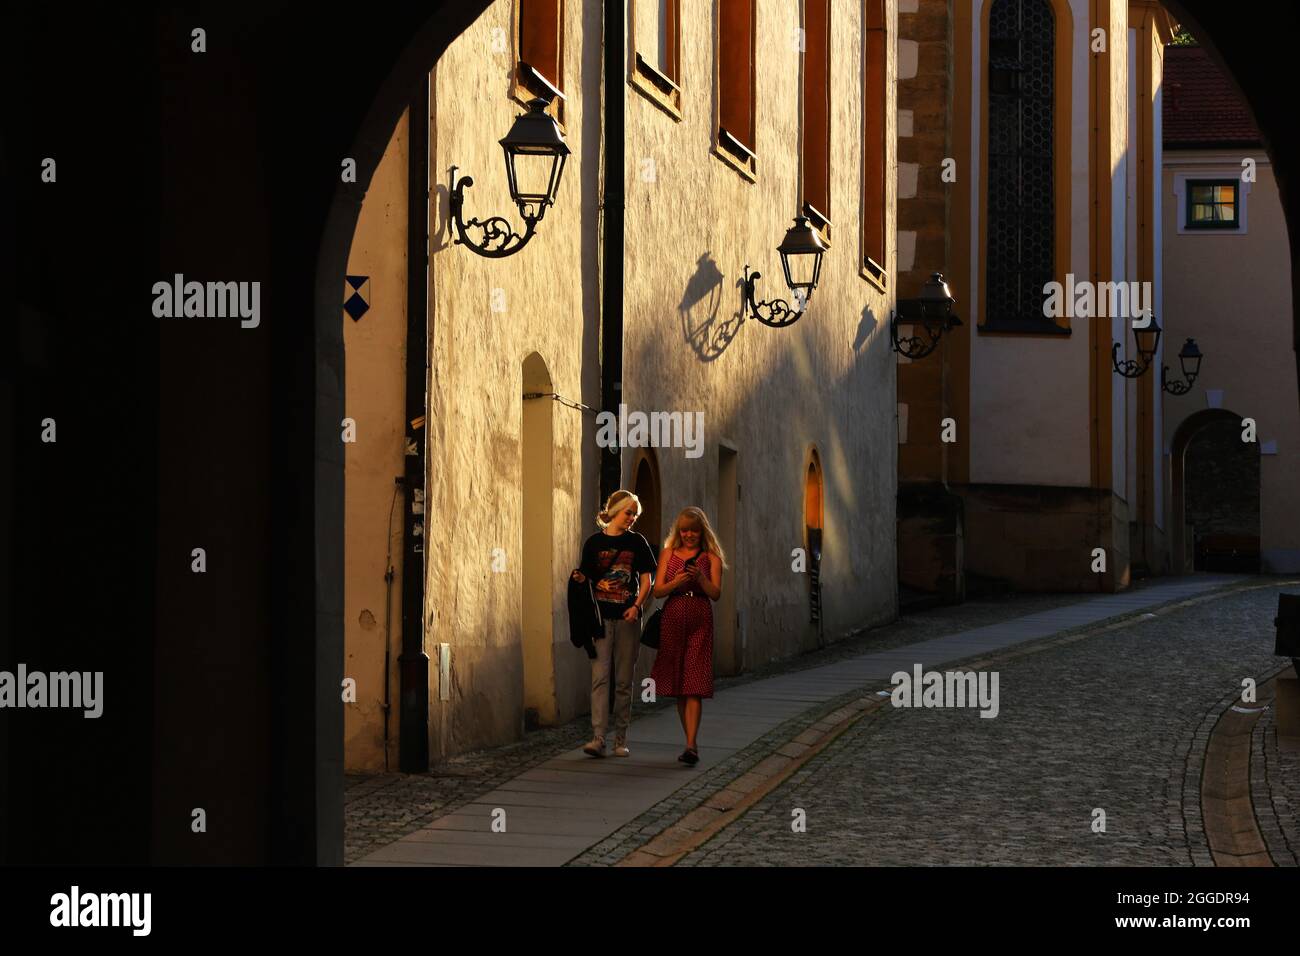 St. Georg die älteste Kirche Ambergs Ein Spaziergang durch das mittelalterliche Zentrum Ambergs verzaubert Kulturliebhaber. Amberg, Oberpfalz, Bayern, Stock Photo